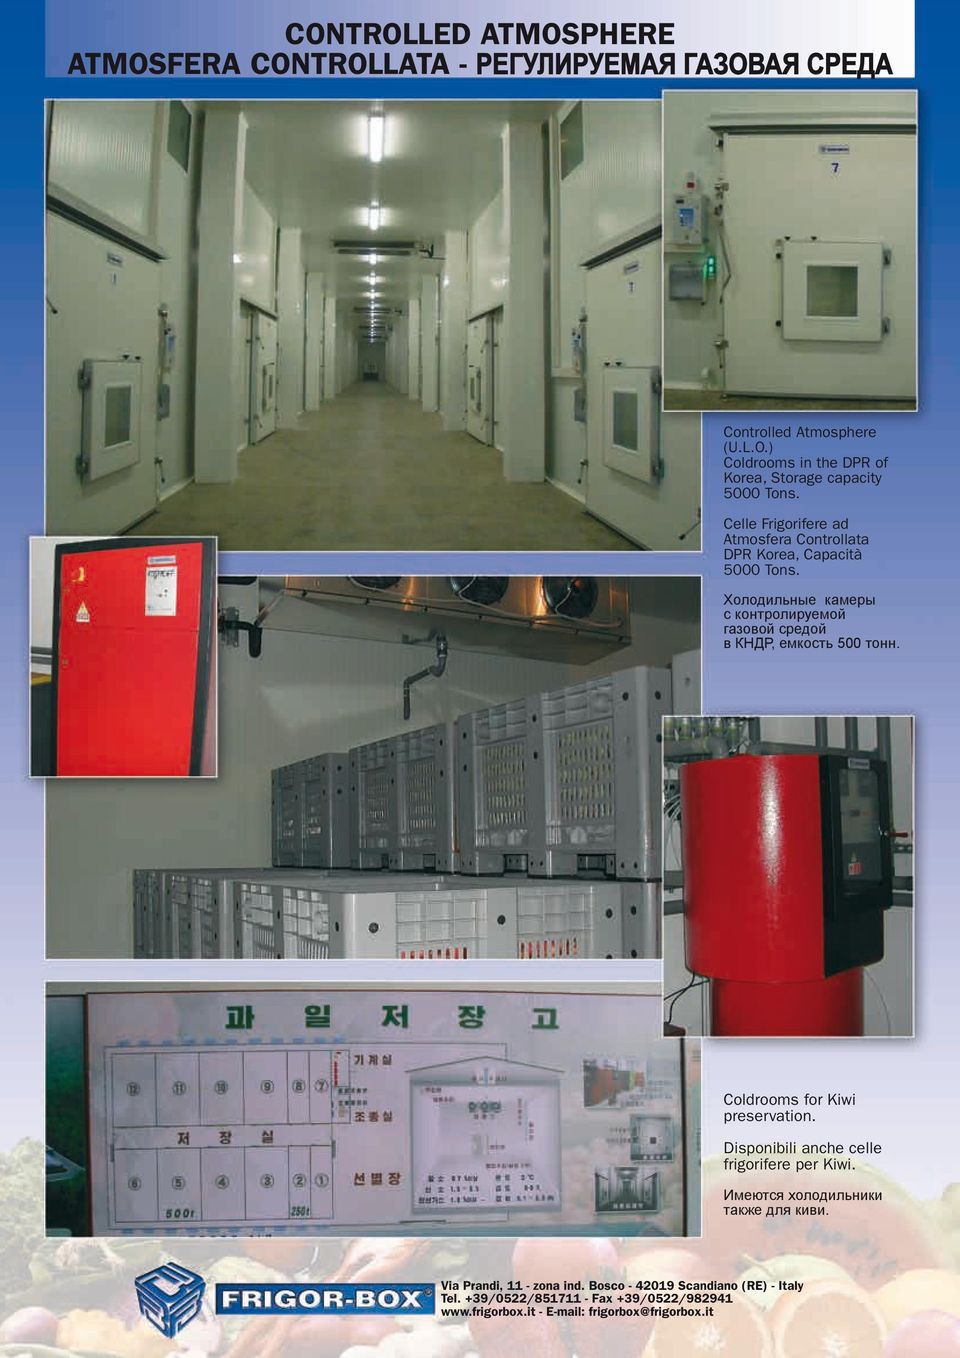 Холодильные камеры с контролируемой газовой средой в КНДР, емкость 500 тонн. Coldrooms for Kiwi preservation.